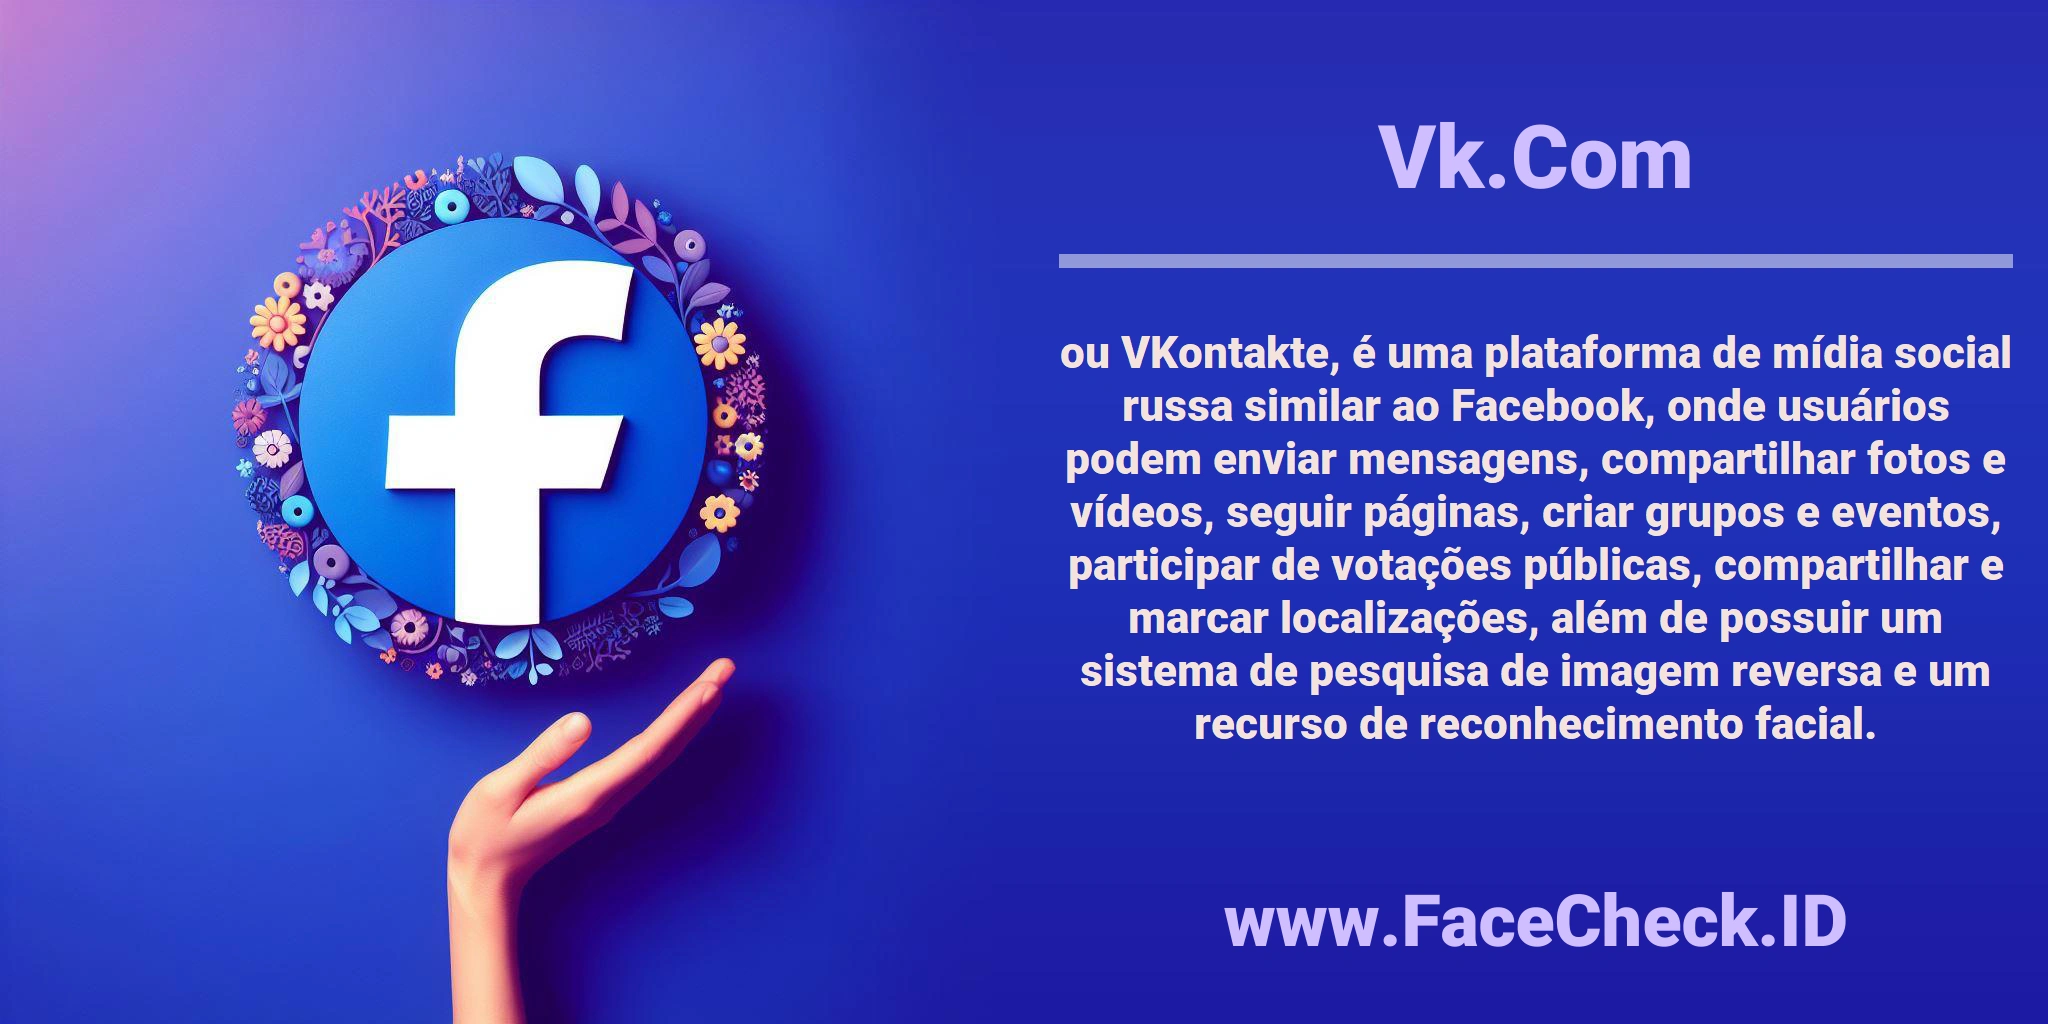 <b>Vk.Com</b> ou VKontakte, é uma plataforma de mídia social russa similar ao Facebook, onde usuários podem enviar mensagens, compartilhar fotos e vídeos, seguir páginas, criar grupos e eventos, participar de votações públicas, compartilhar e marcar localizações, além de possuir um sistema de pesquisa de imagem reversa e um recurso de reconhecimento facial.